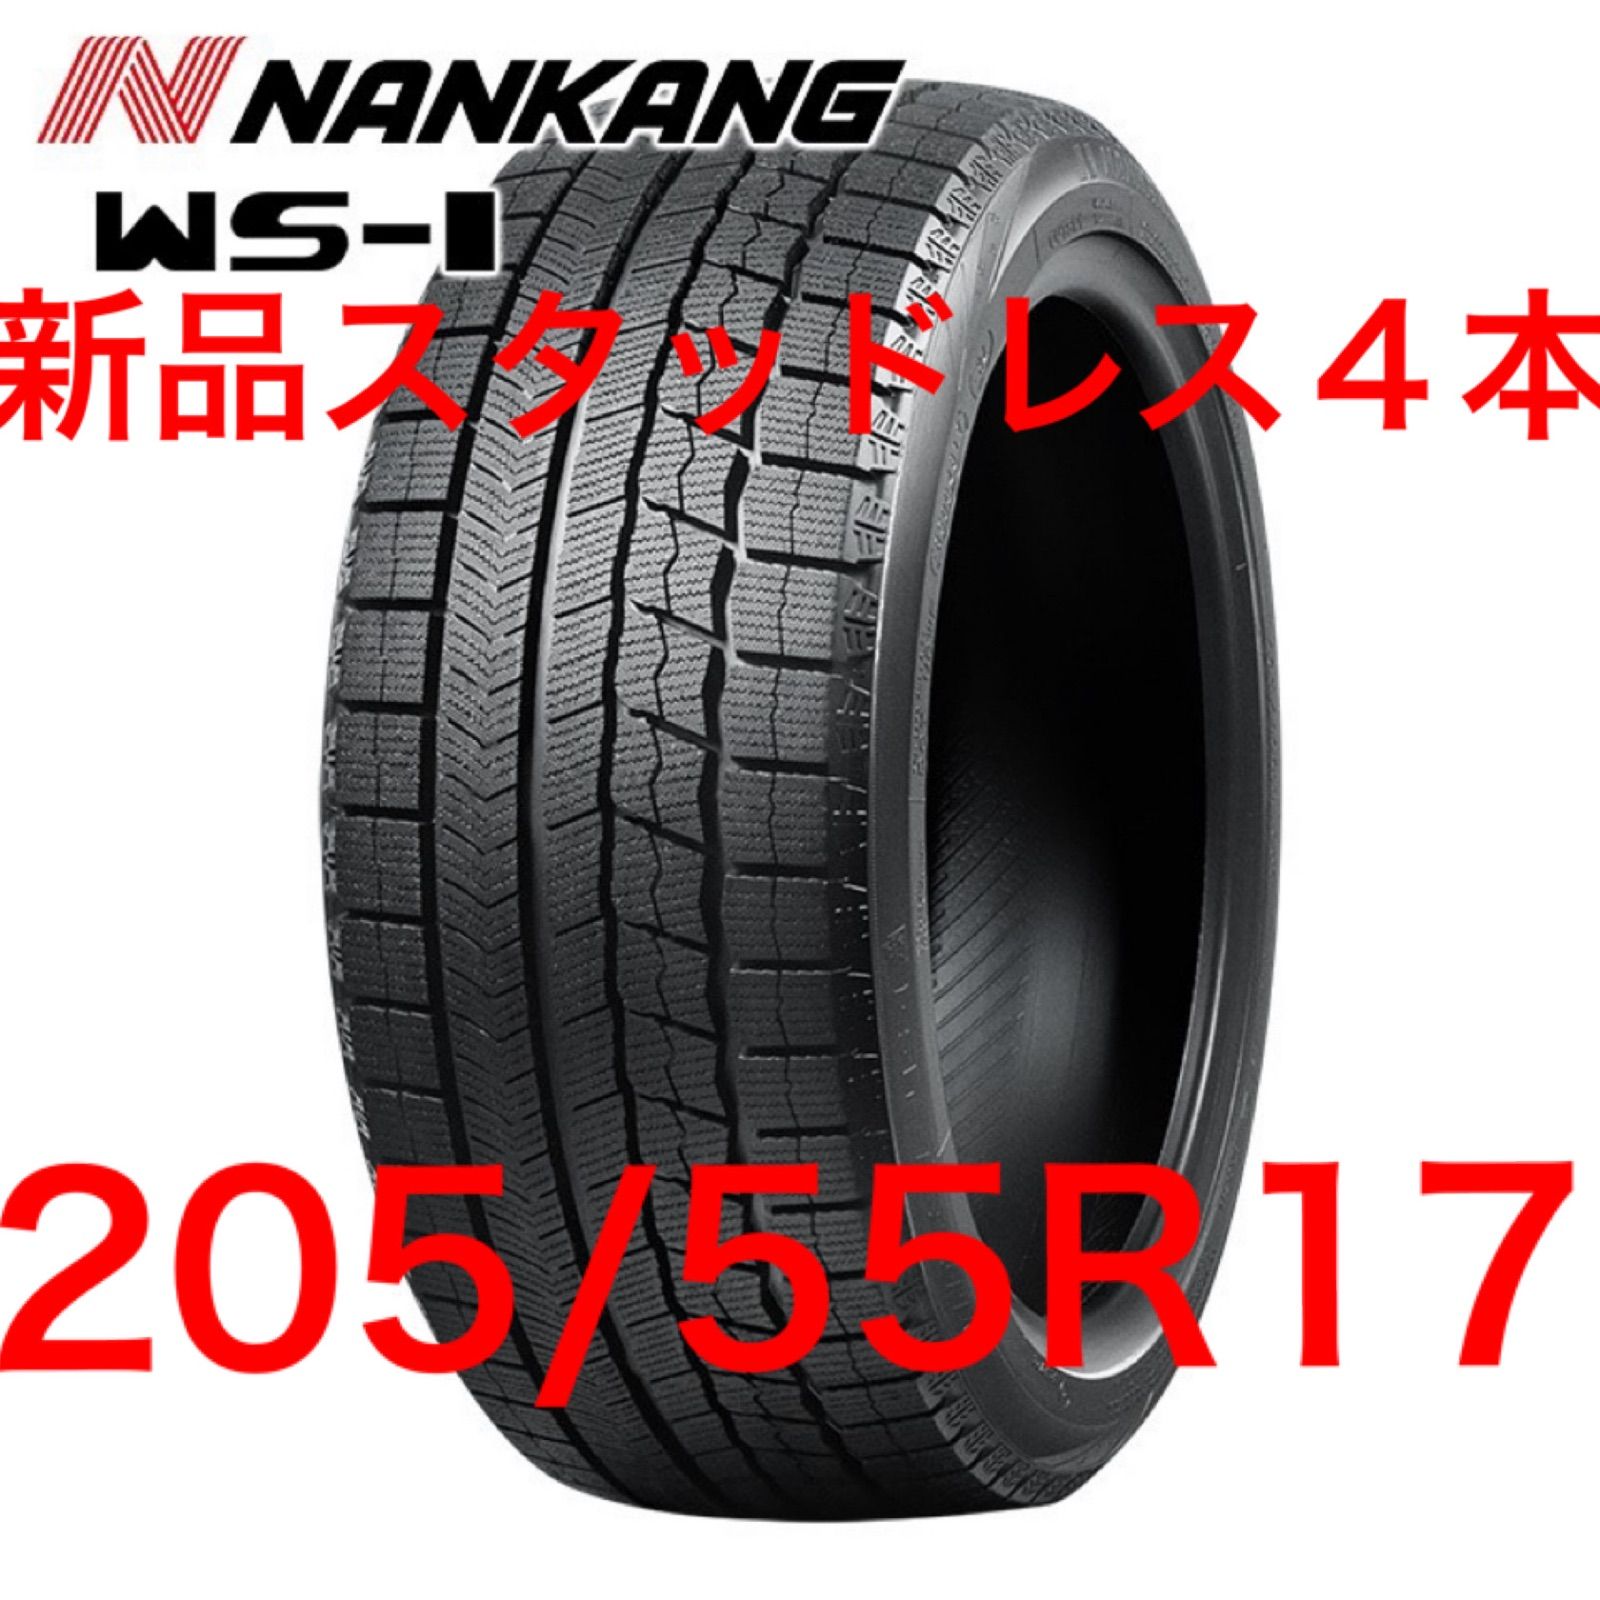 新品22年製 NANKANG ナンカン WS-1 205/55R17 91Q タイヤショップIMPACT メルカリ